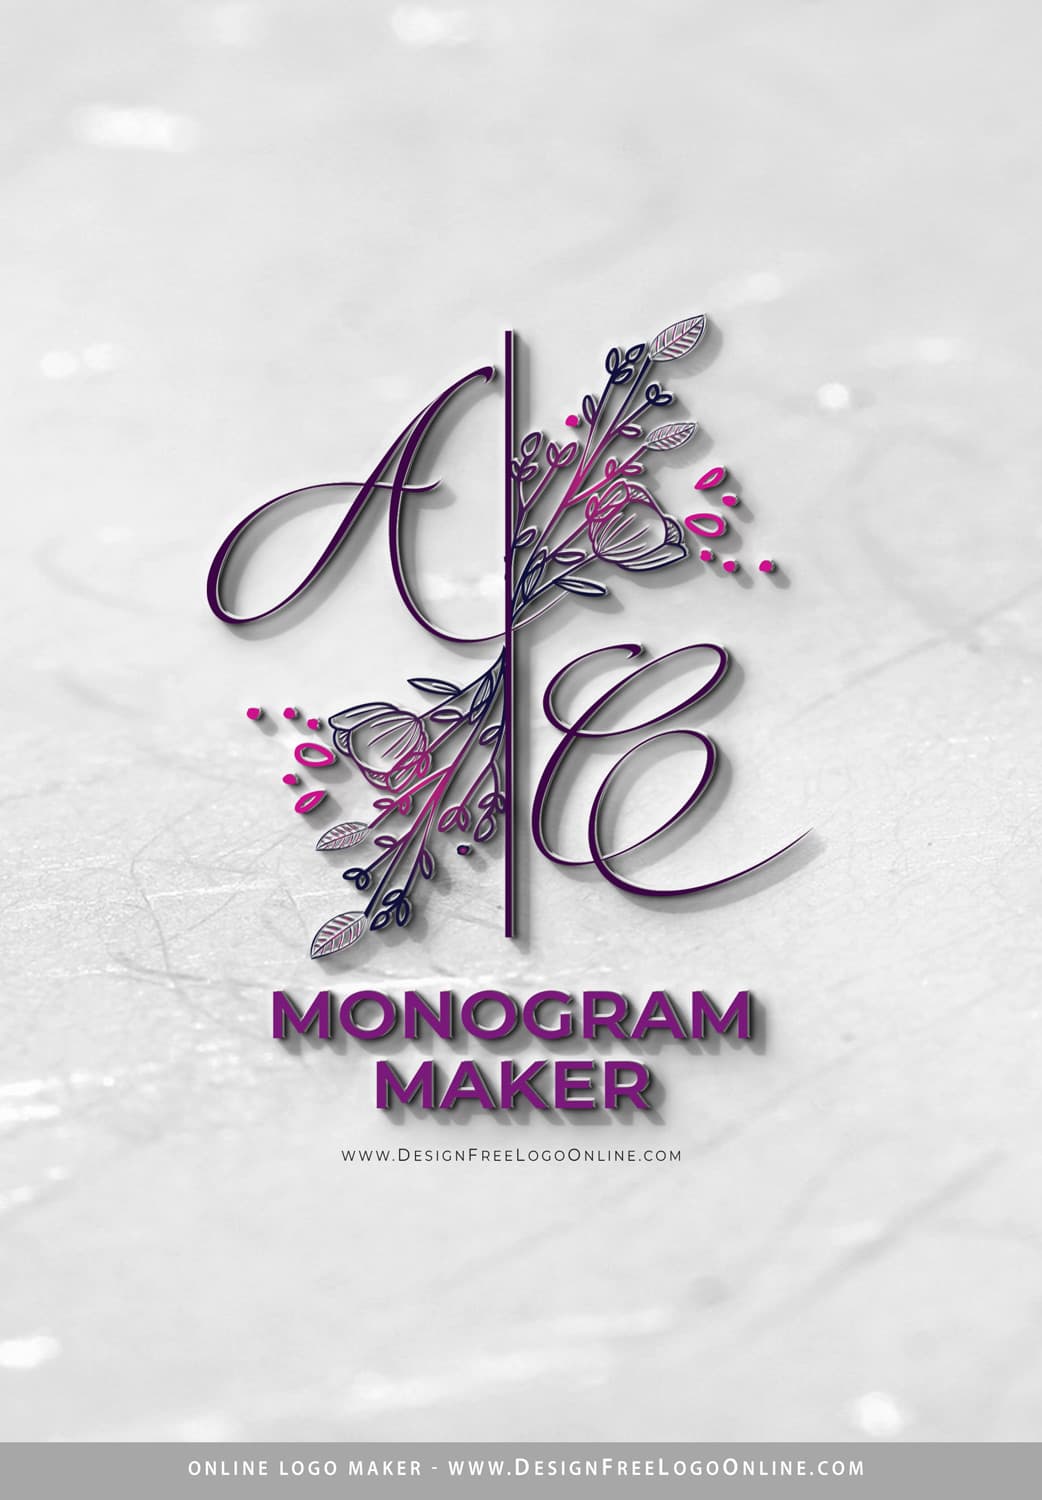 Online Monogram Maker